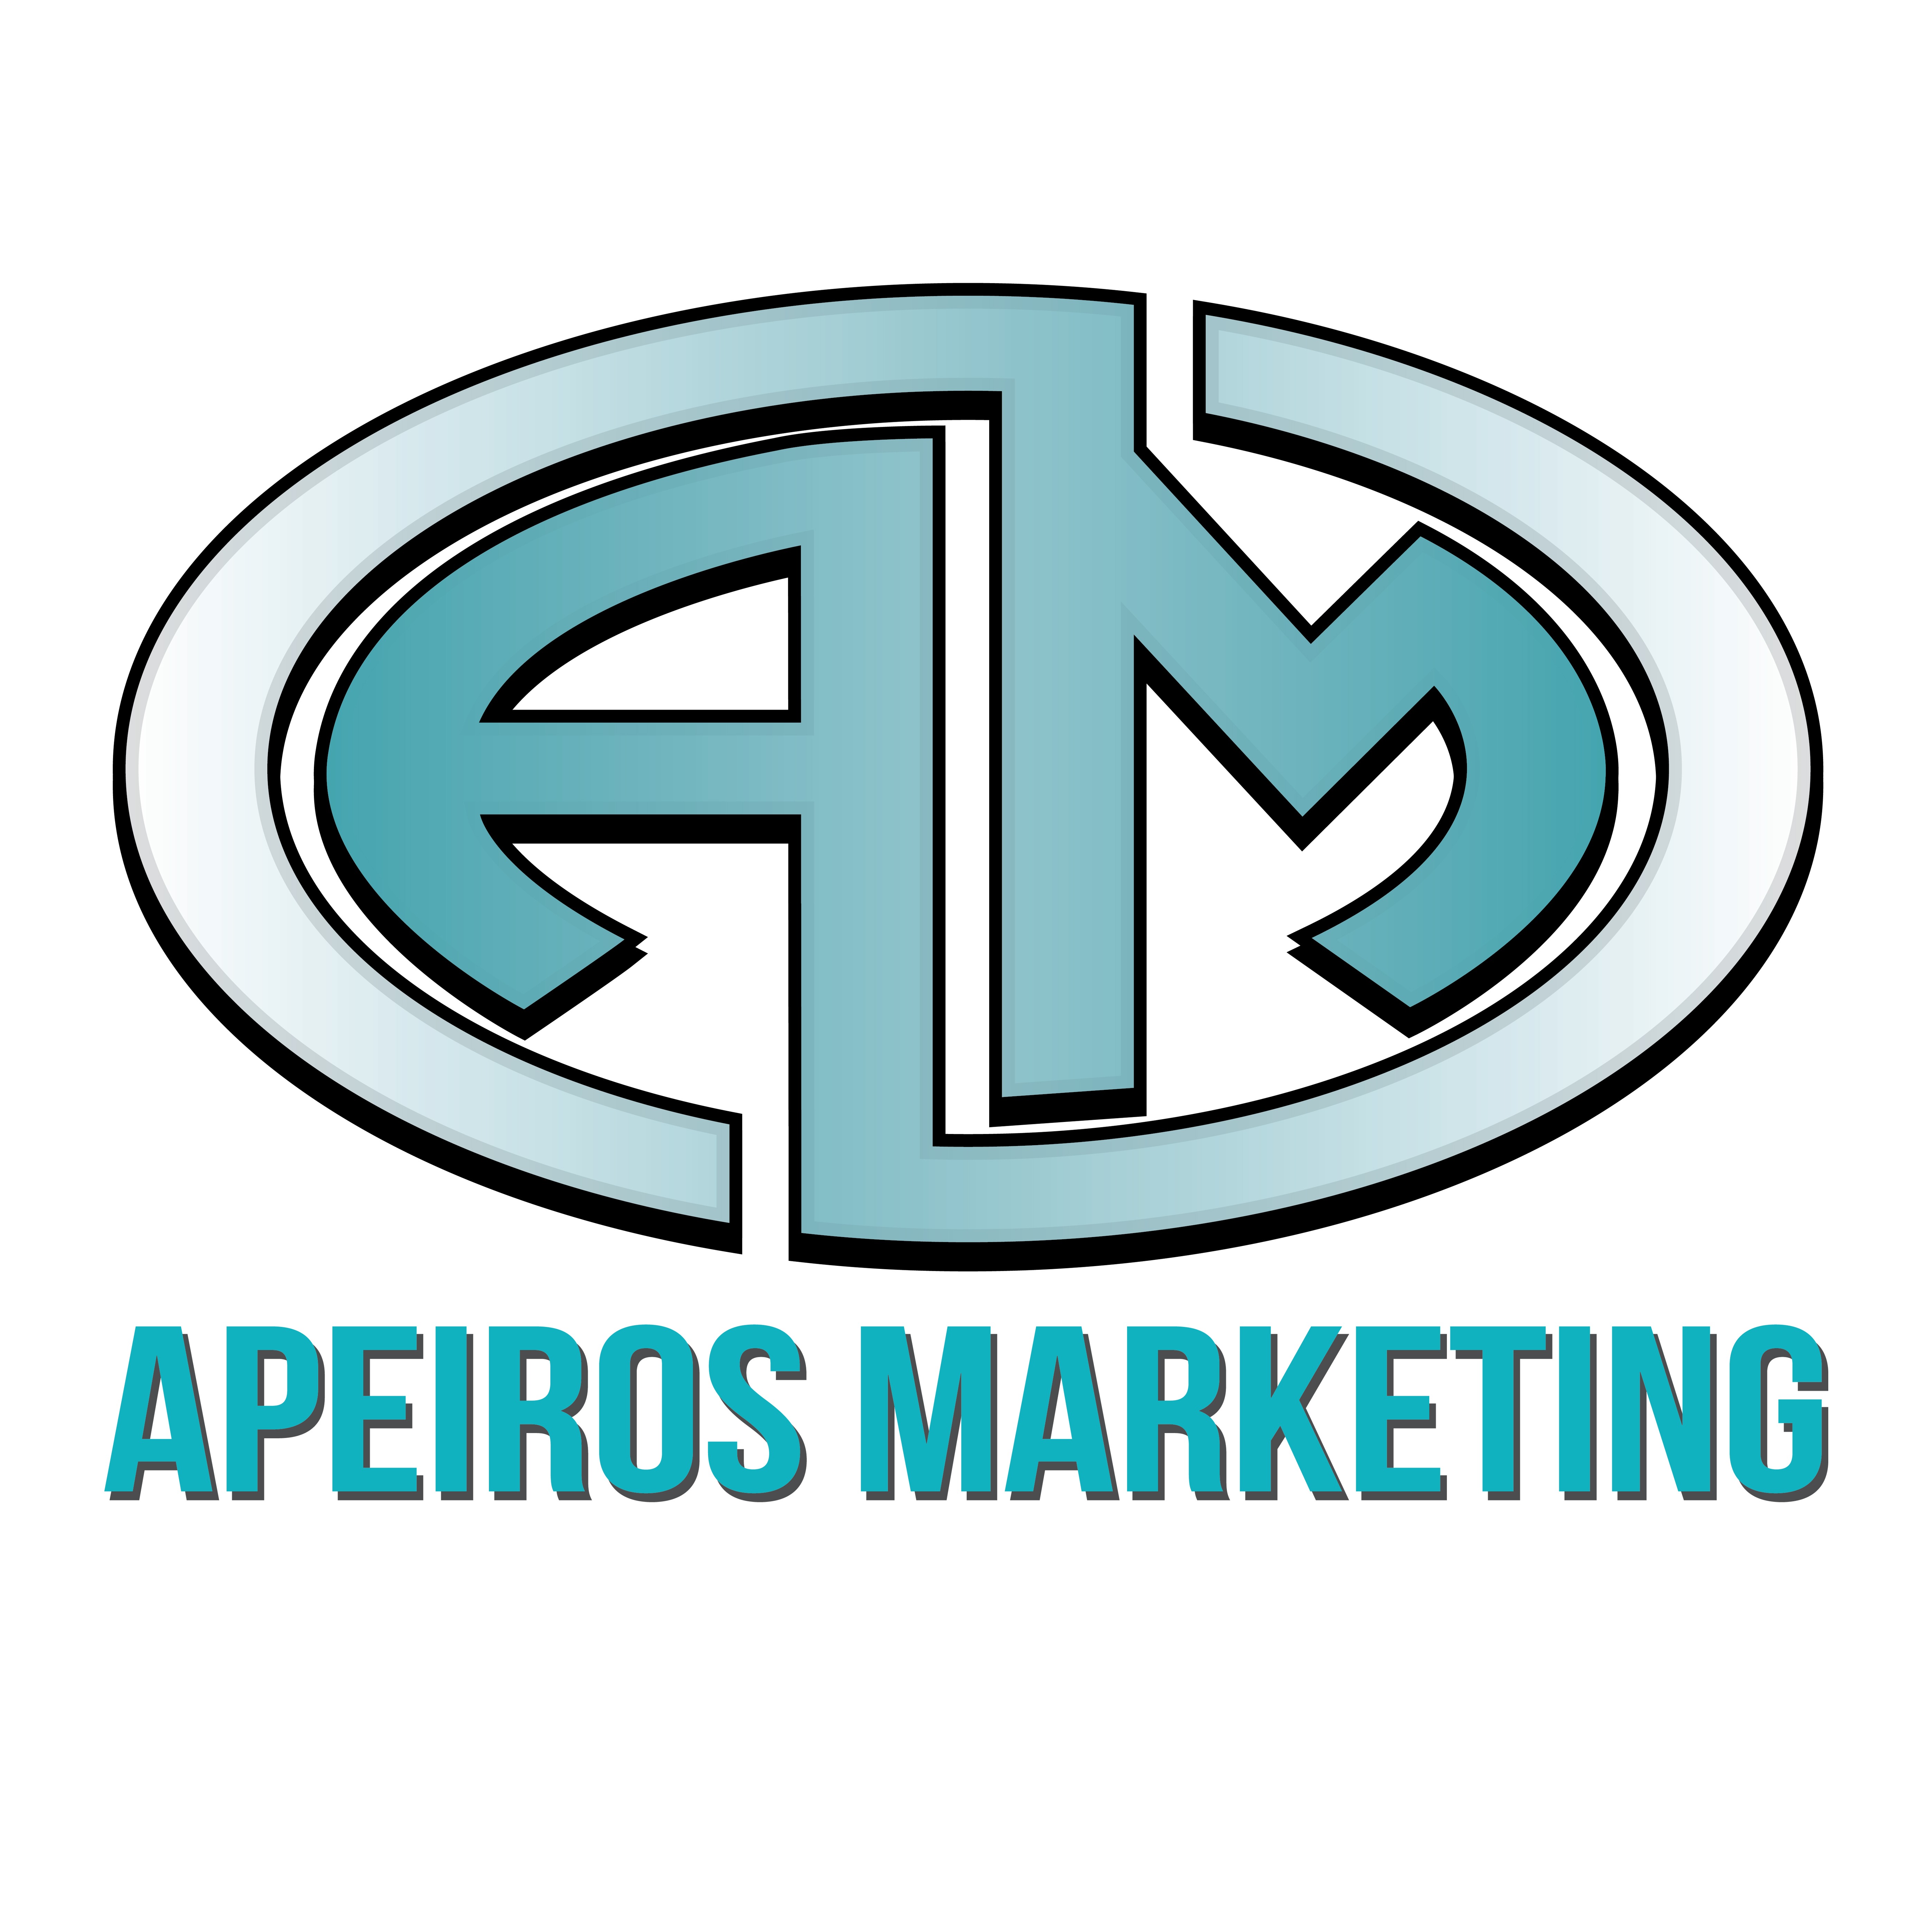 Apeiros Marketing Logo white background